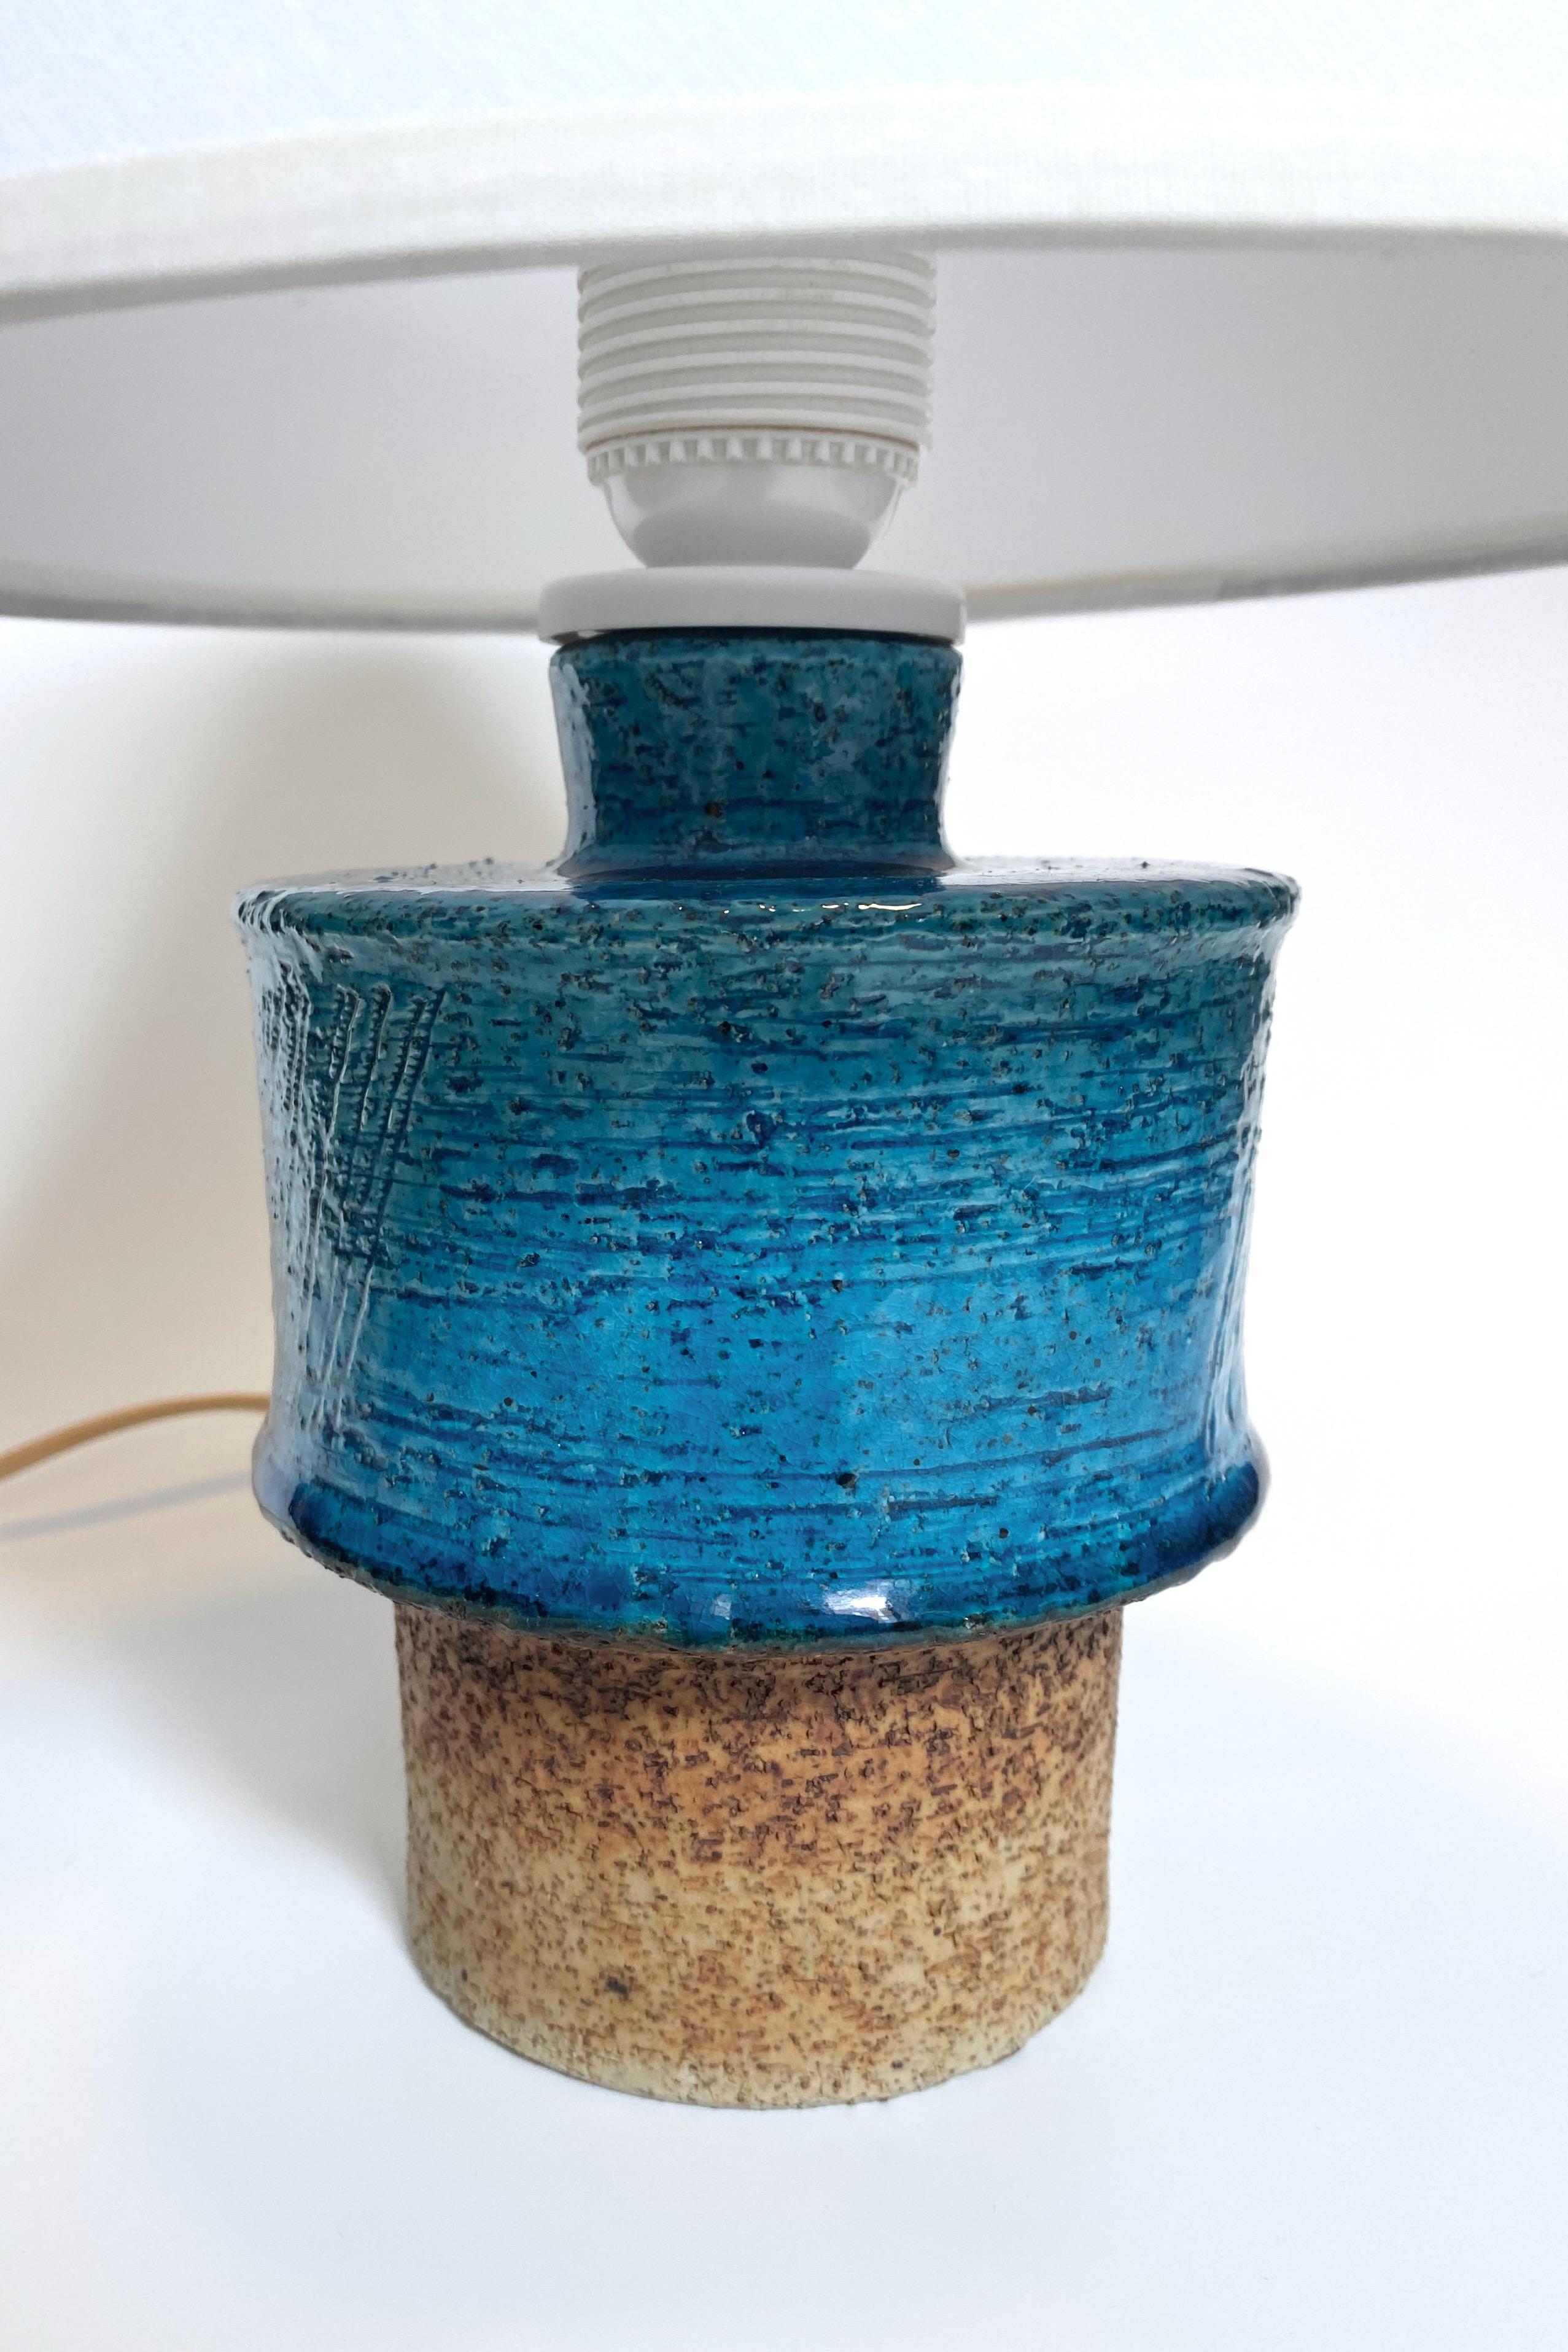 Lampe de table en grès rustique de la designer suédoise Inger Persson. Fabriqué par l'usine de céramique suédoise Rörstrand dans les années 1970, avec la signature du designer en dessous. Belle turquoise et couleurs de pierre et en très bon état.